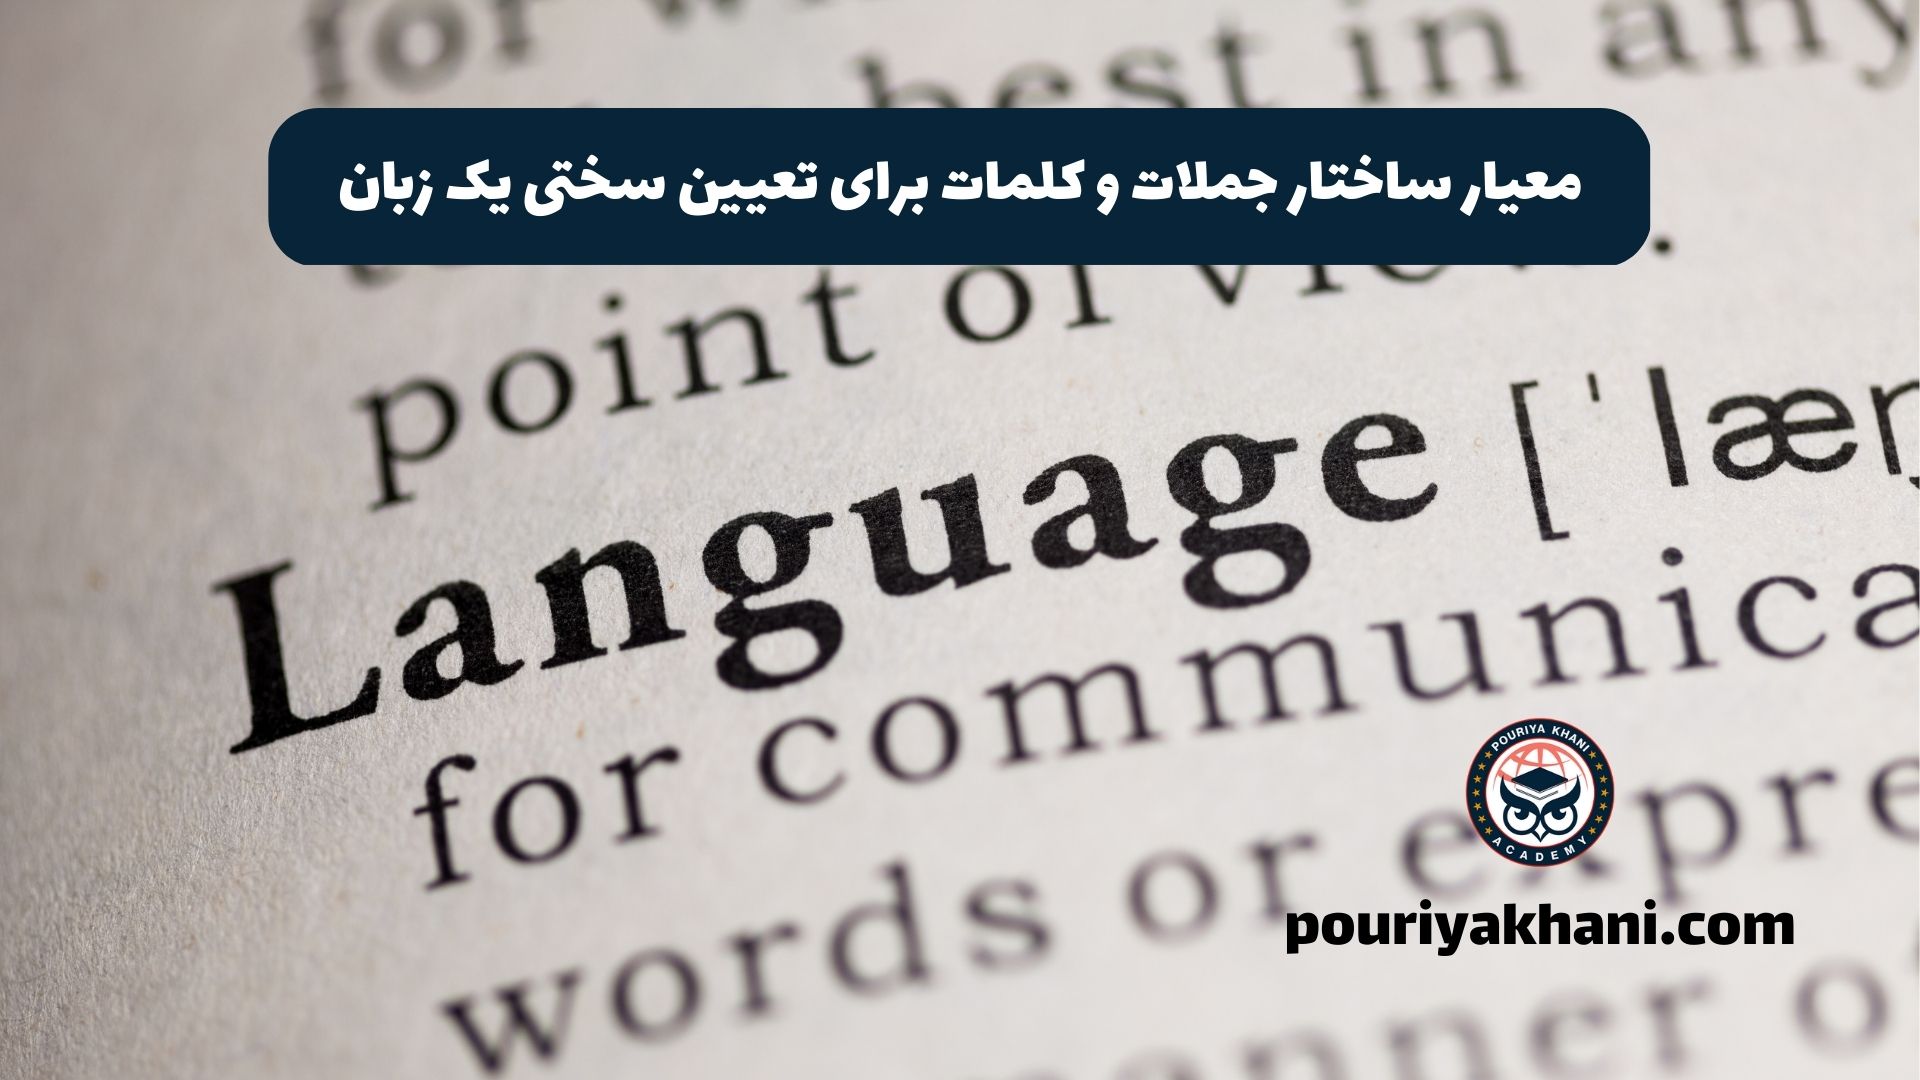 معیار ساختار جملات و کلمات برای تعیین سختی یک زبان